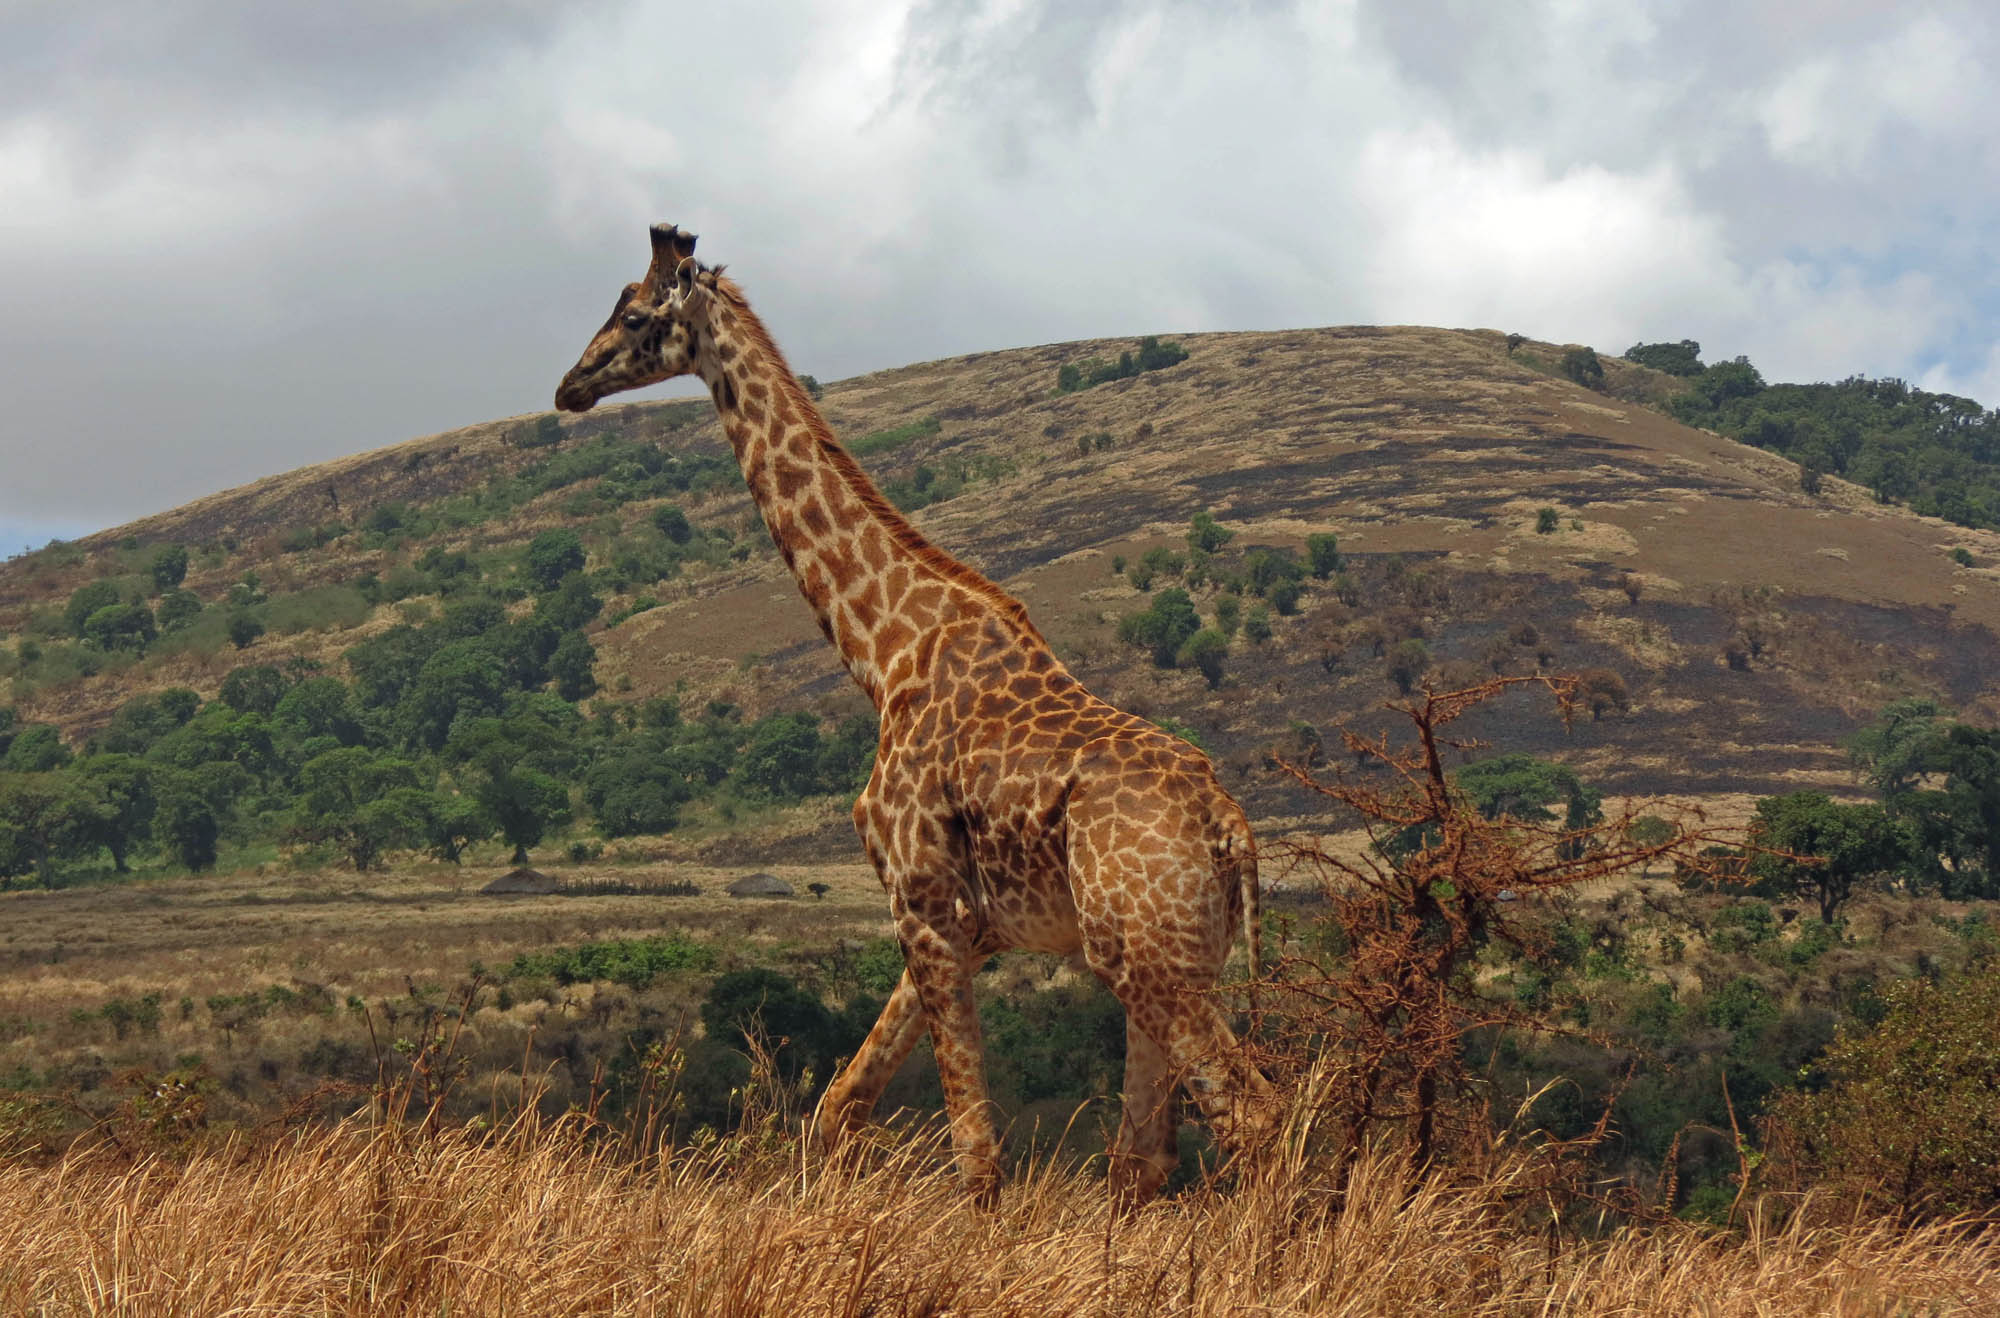 Giraffe in Ngorongoro Crater - Ralph Pannell